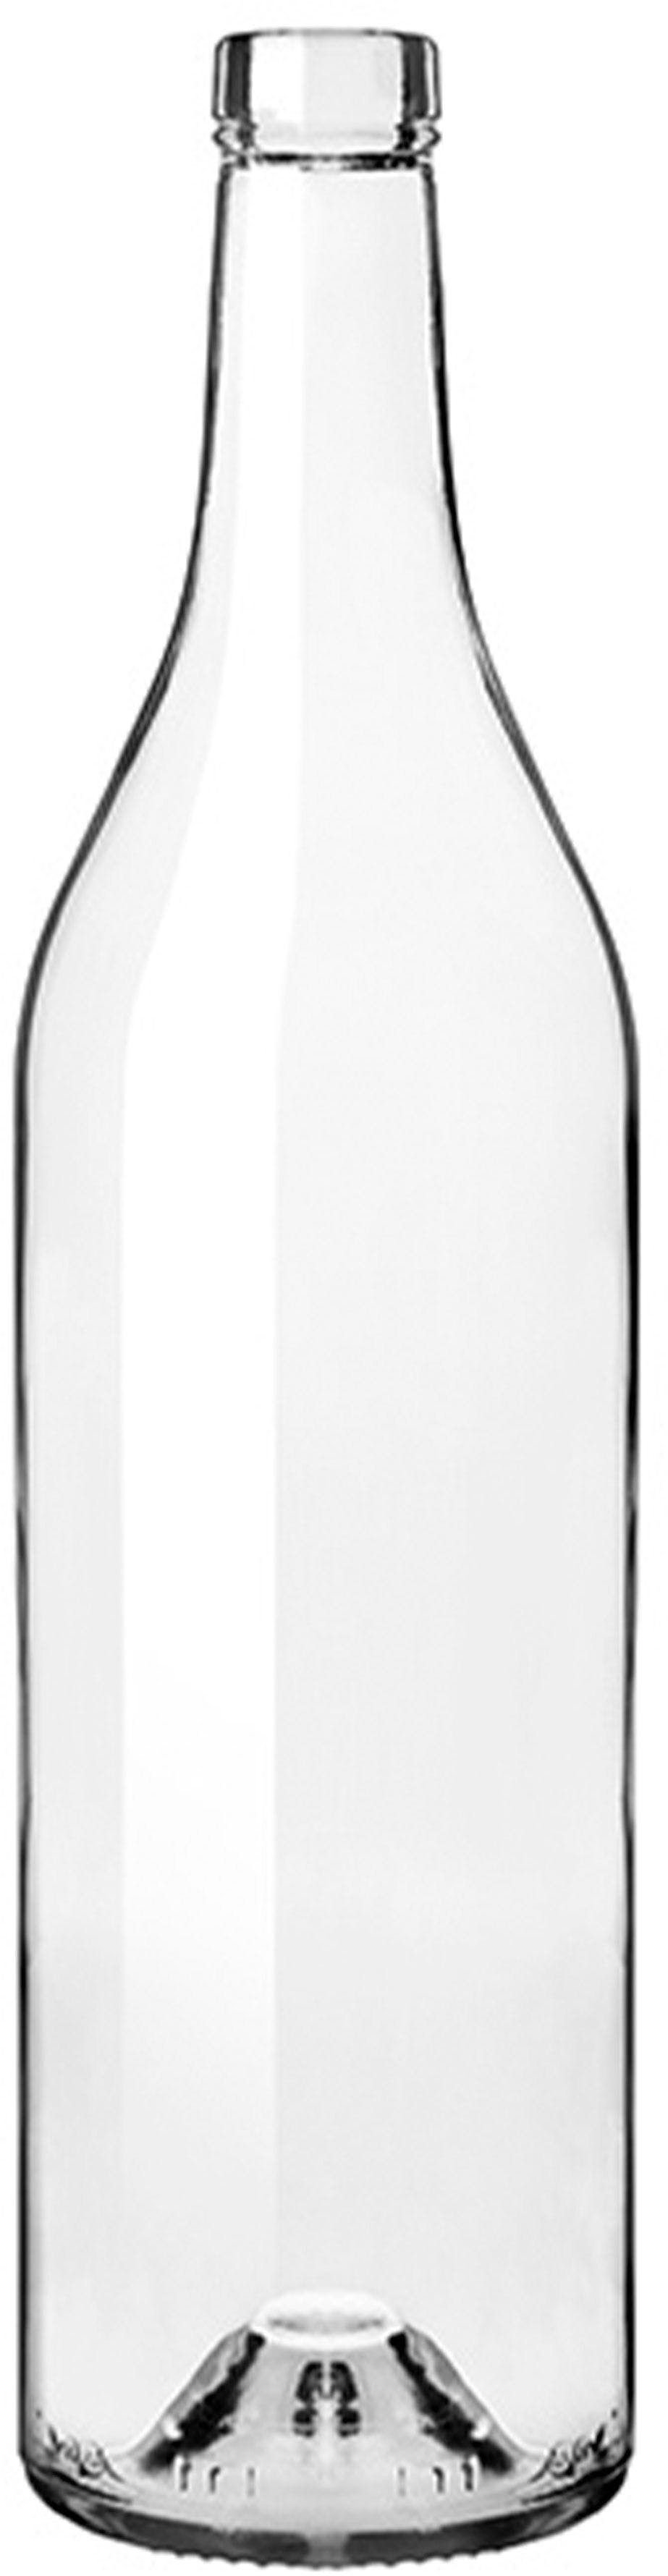 Flasche COGNACAISE  750 ml BG-Korken